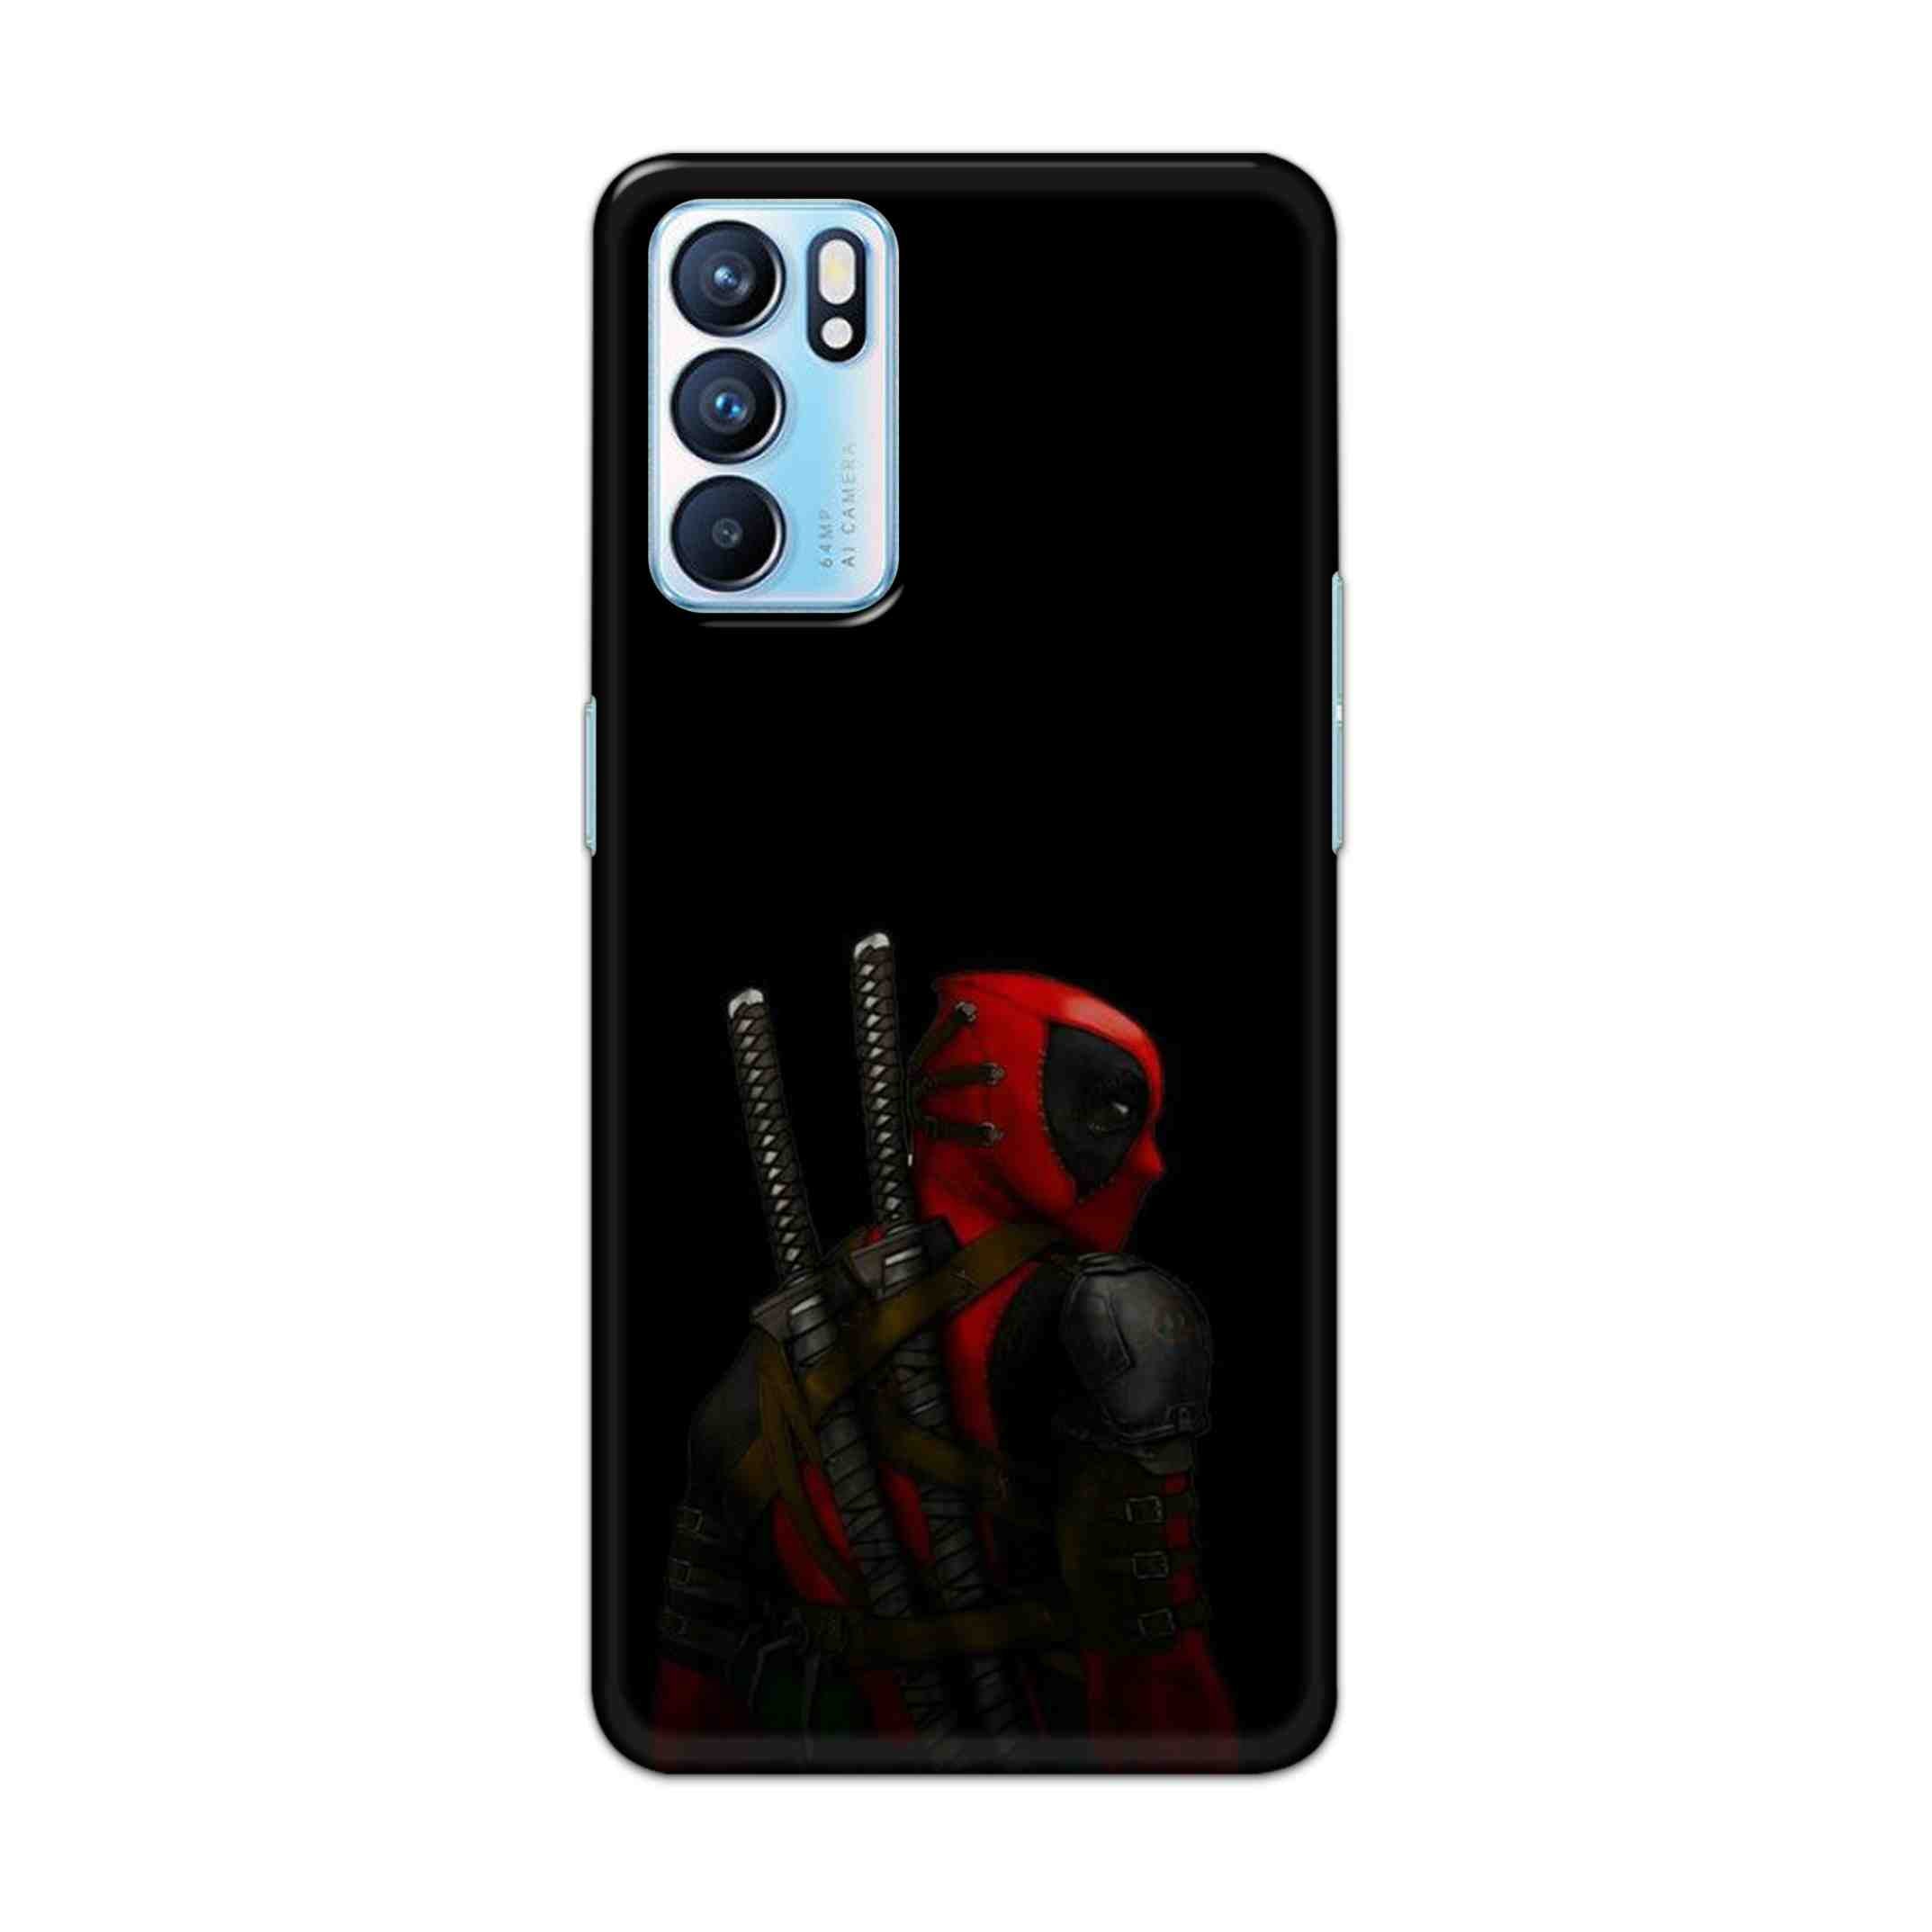 Buy Deadpool Hard Back Mobile Phone Case Cover For OPPO RENO 6 Online